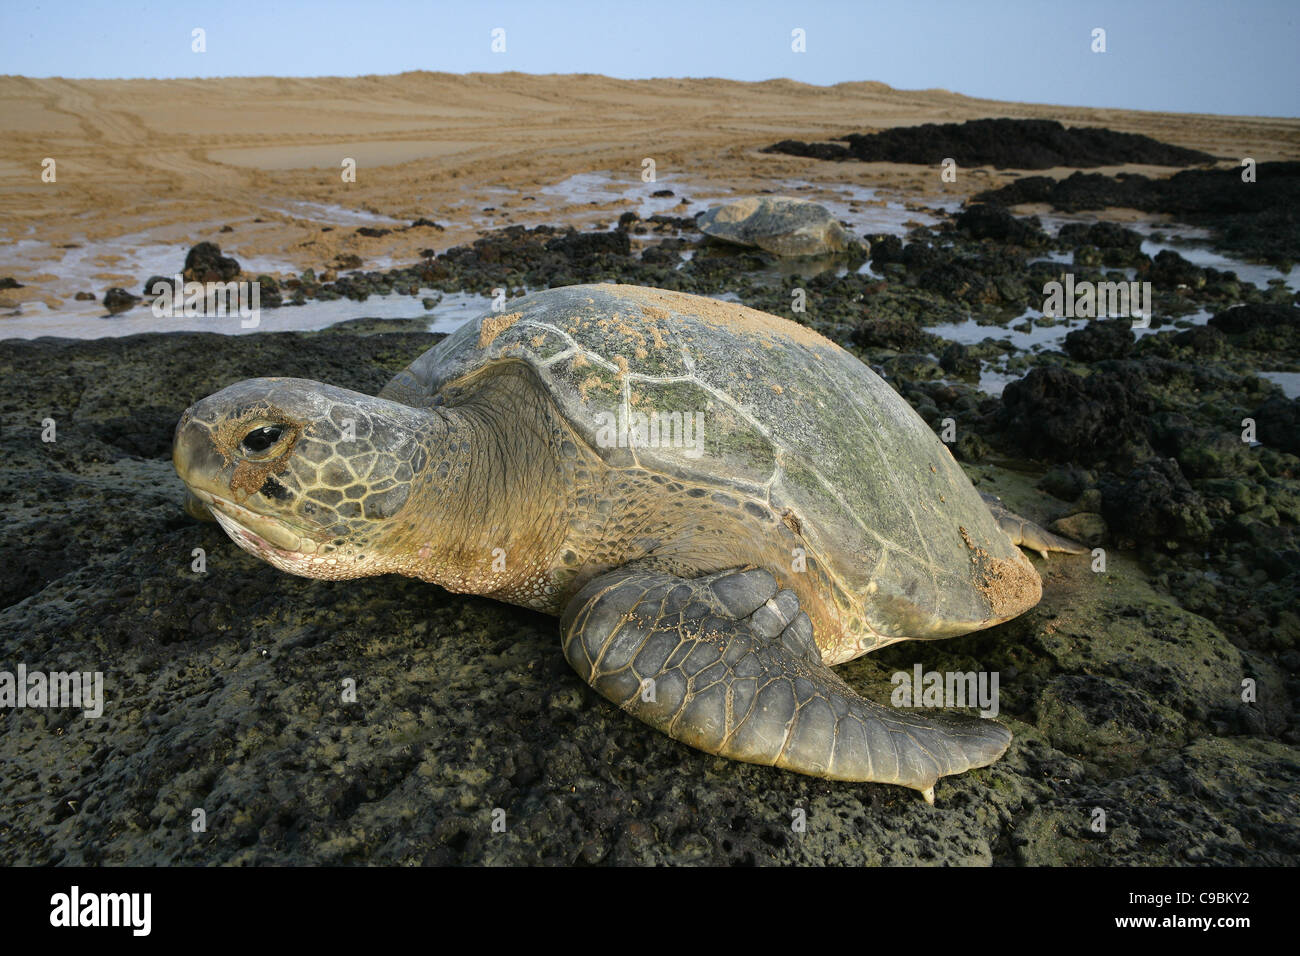 L'Afrique, la Guinée-Bissau, la tortue de mer verte sur la pierre Banque D'Images